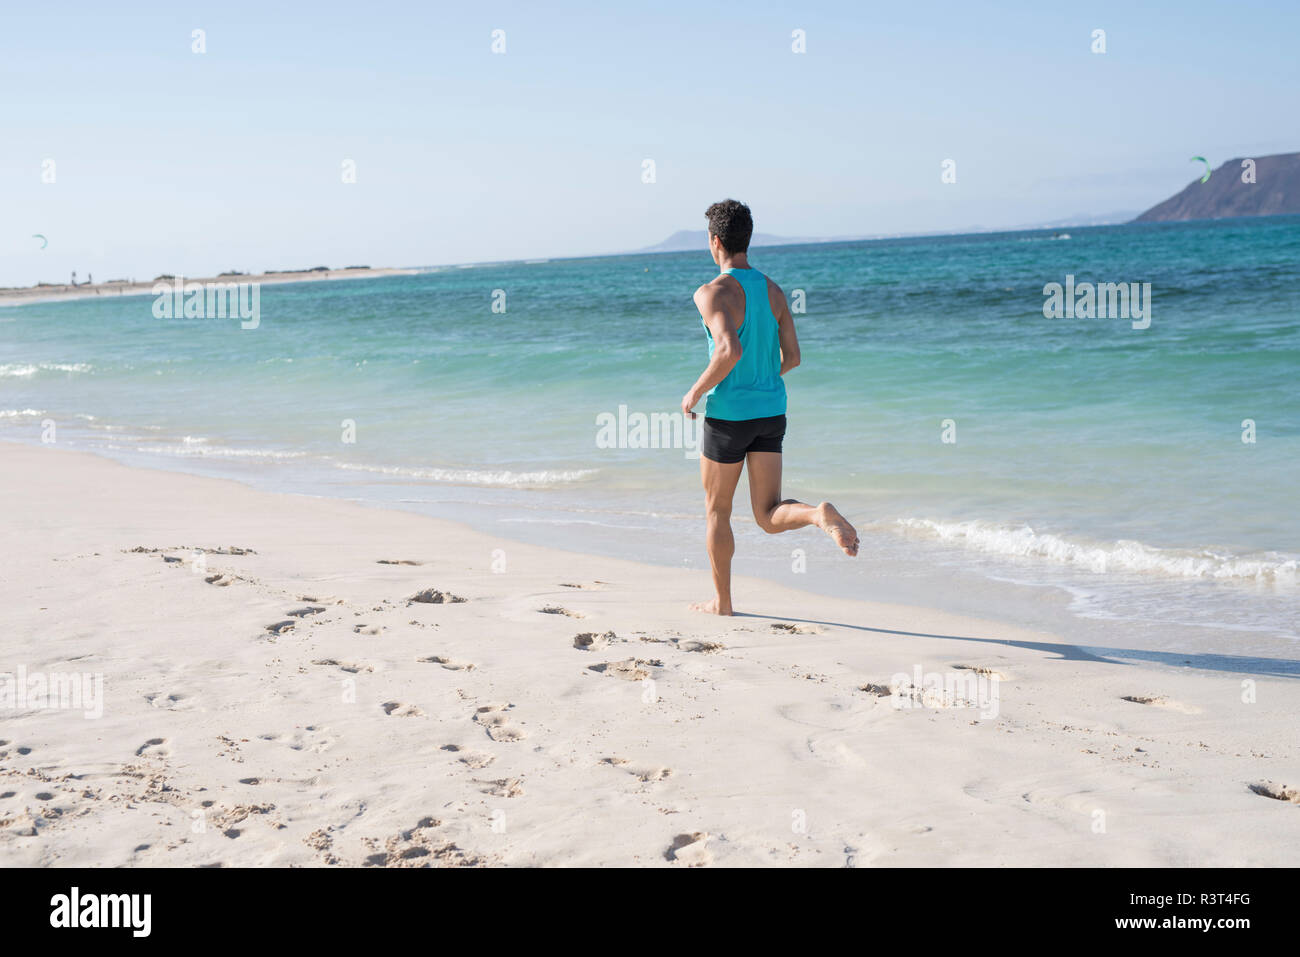 Spanien, Kanarische Inseln, Fuerteventura, Rückansicht des jungen Mann laufen am Strand Stockfoto